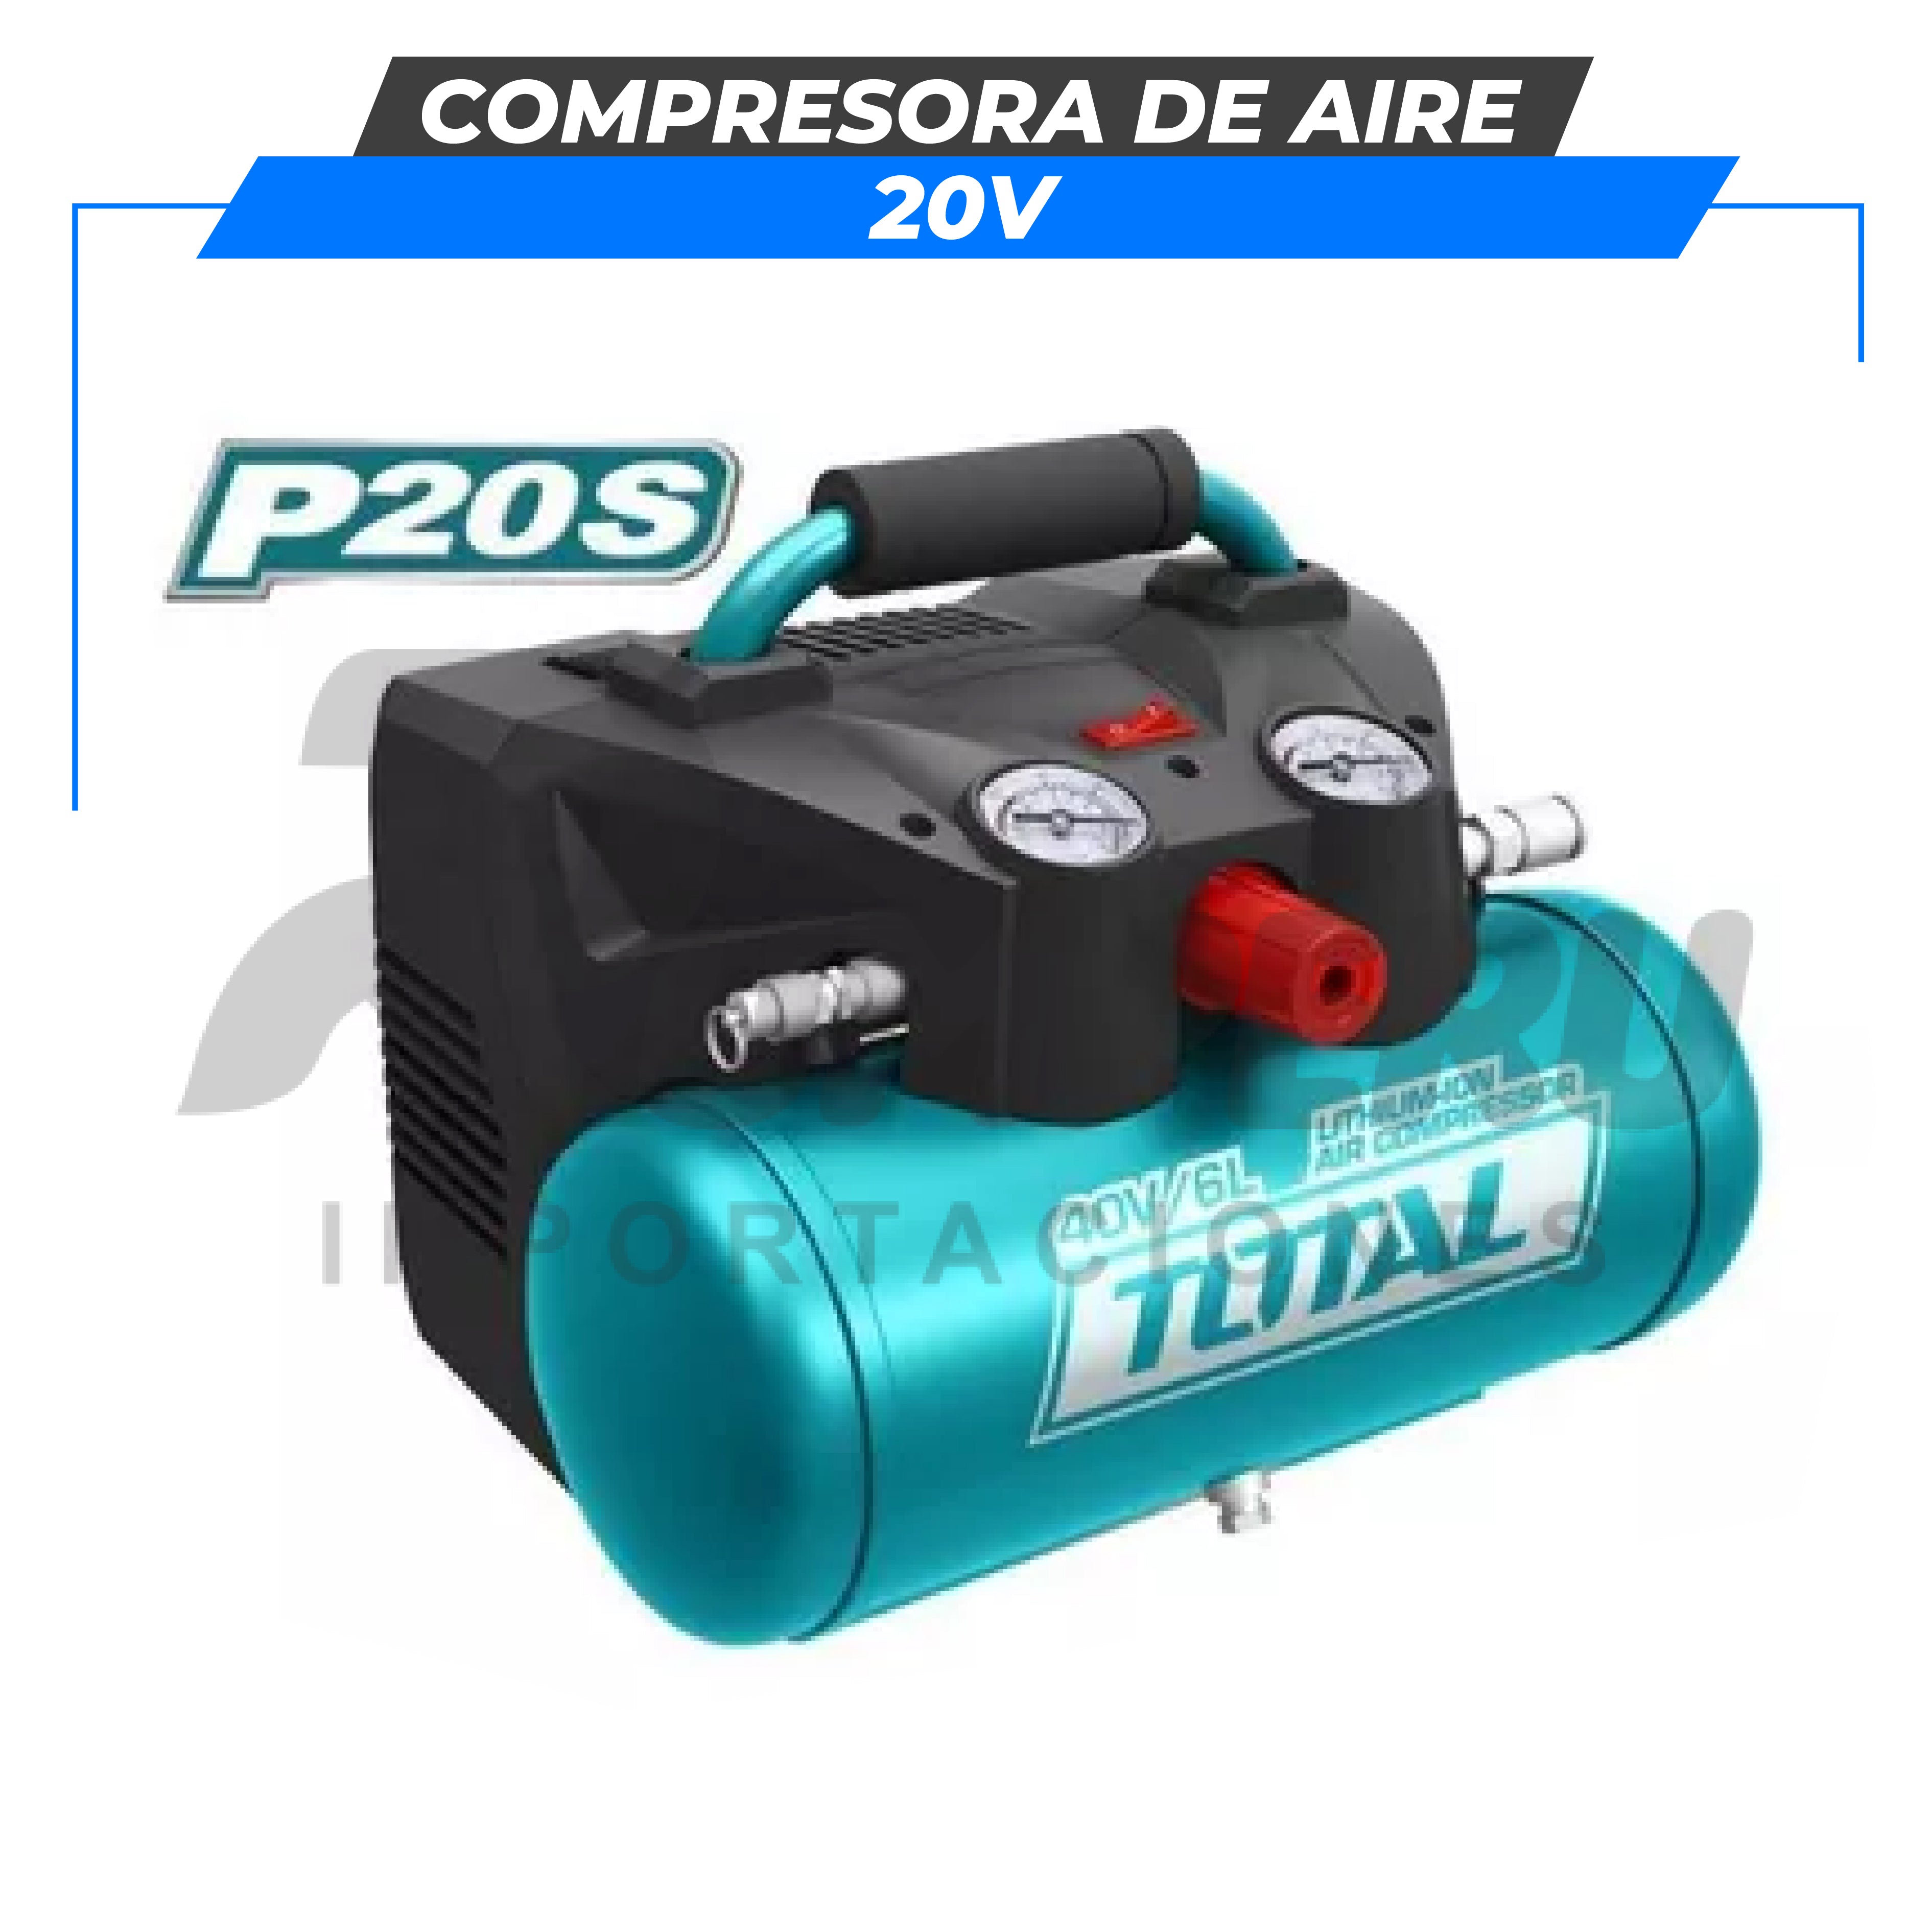 Compresora de aire 20v